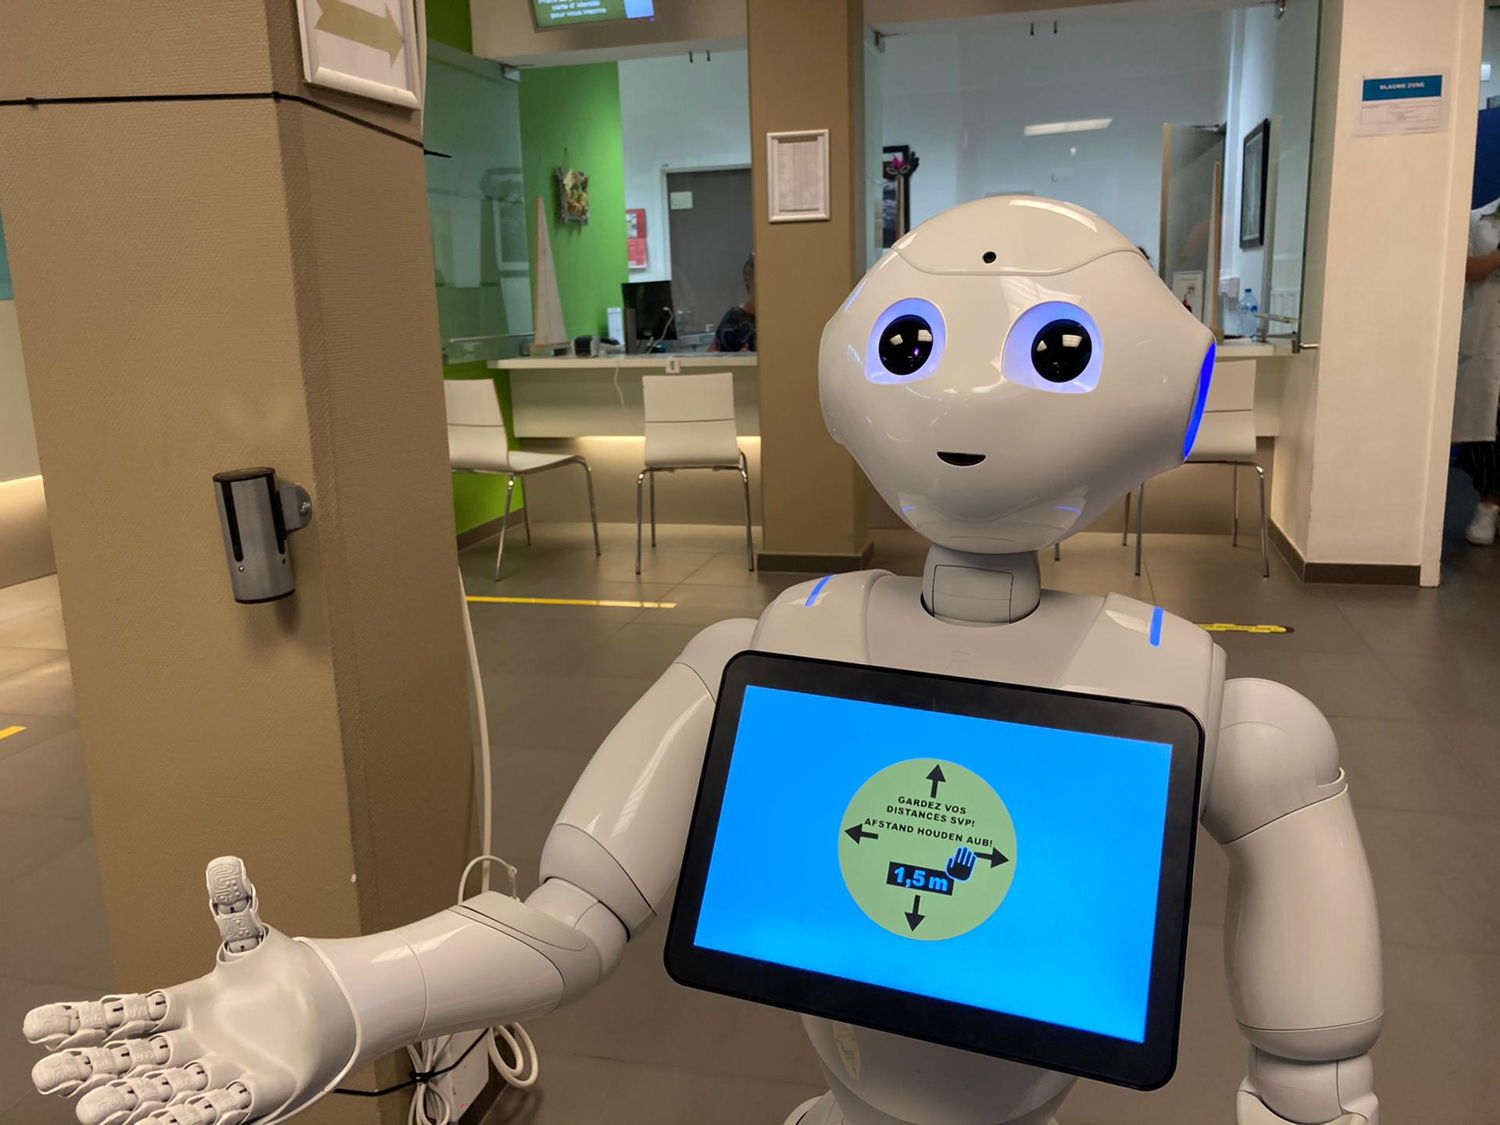 Sociale robot Pepper herinnert patiënten aan de afspraken die ze in het UZ Brussel moeten naleven om samen te zorgen voor een veilige ziekenhuisomgeving